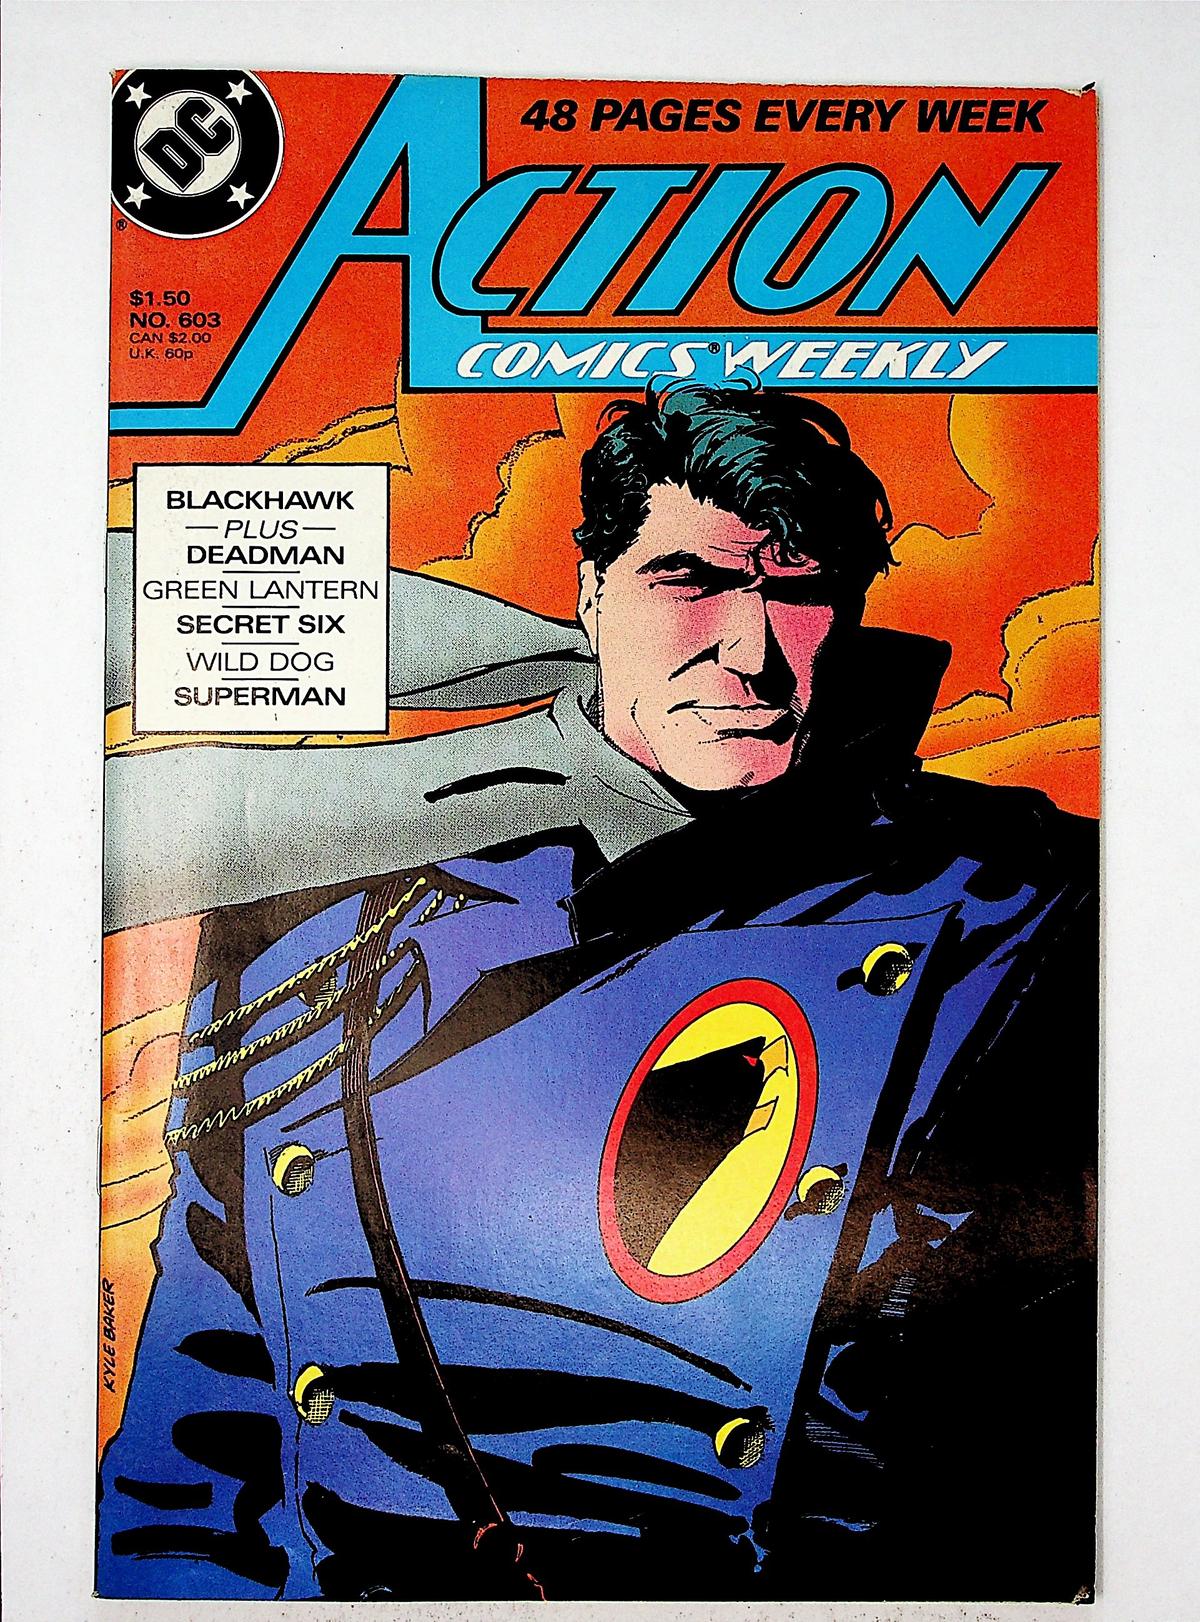 Action Comics, Vol. 1 # 603